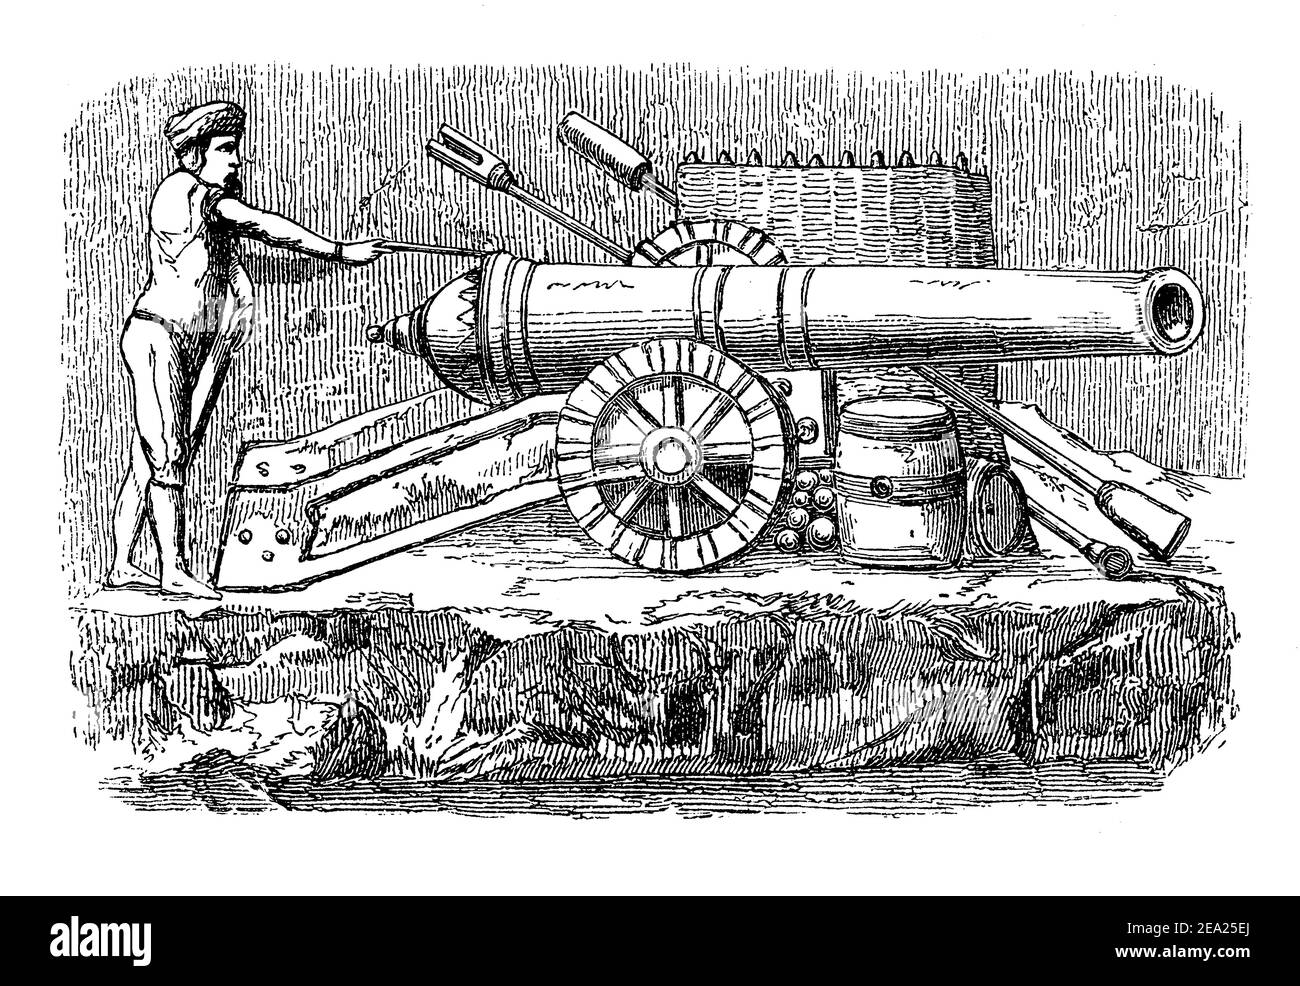 Chapitre de fin typographique, vignette médiévale antique décorant un livre sur l'histoire de l'artillerie avec un soldat d'infanterie tirant un canon à roues montées Banque D'Images